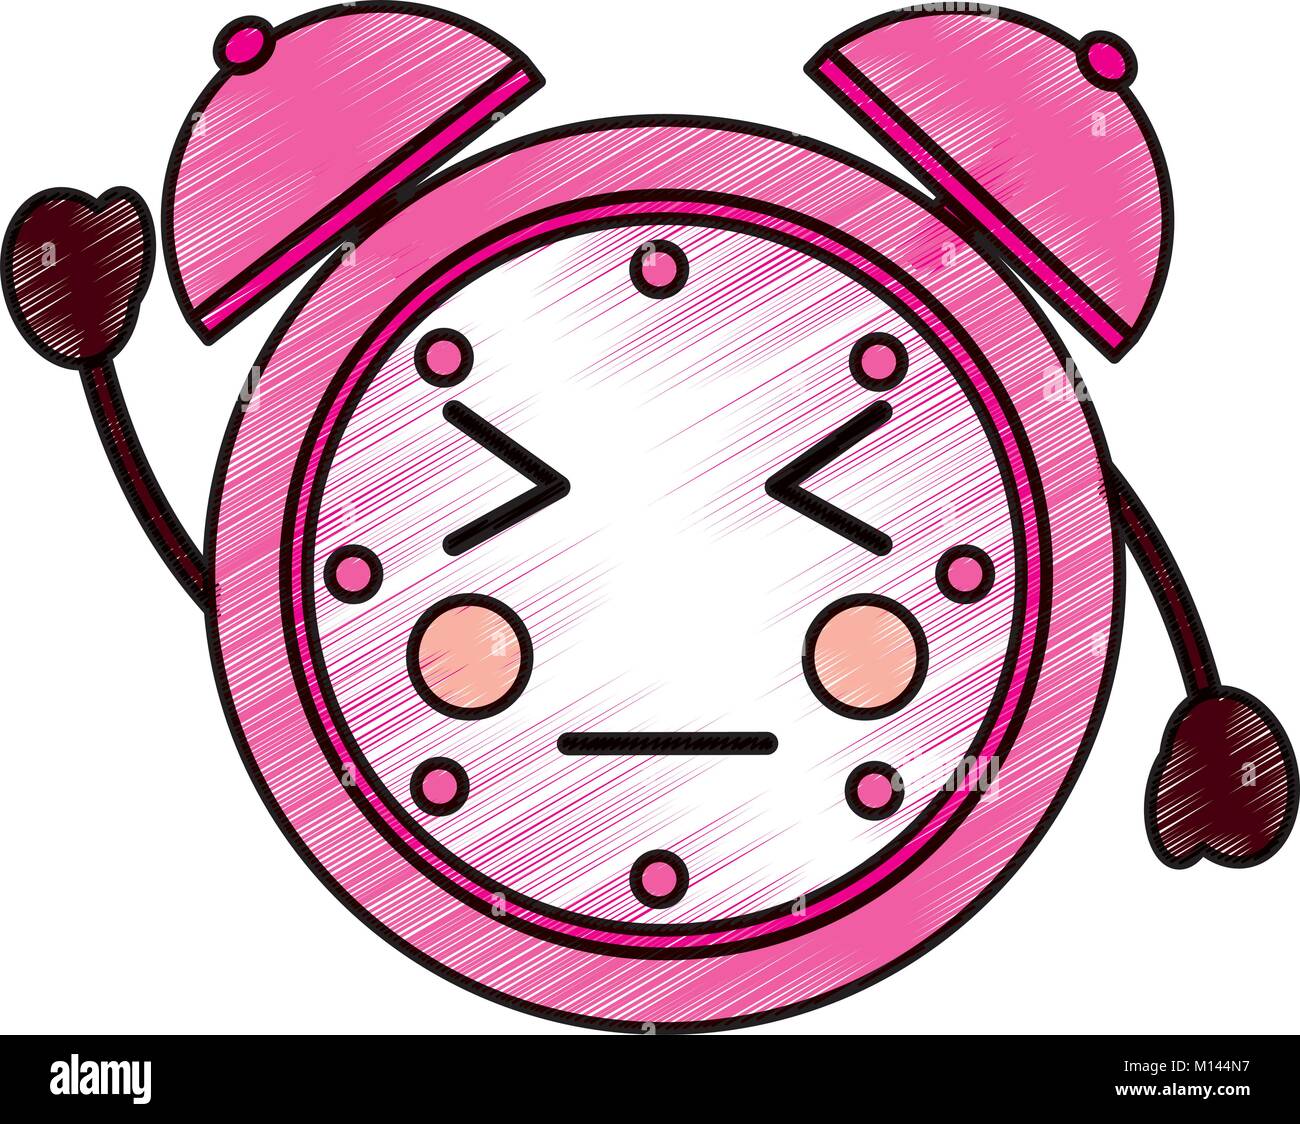 kawaii cartoon clock alarm character Stock Vector Image & Art - Alamy